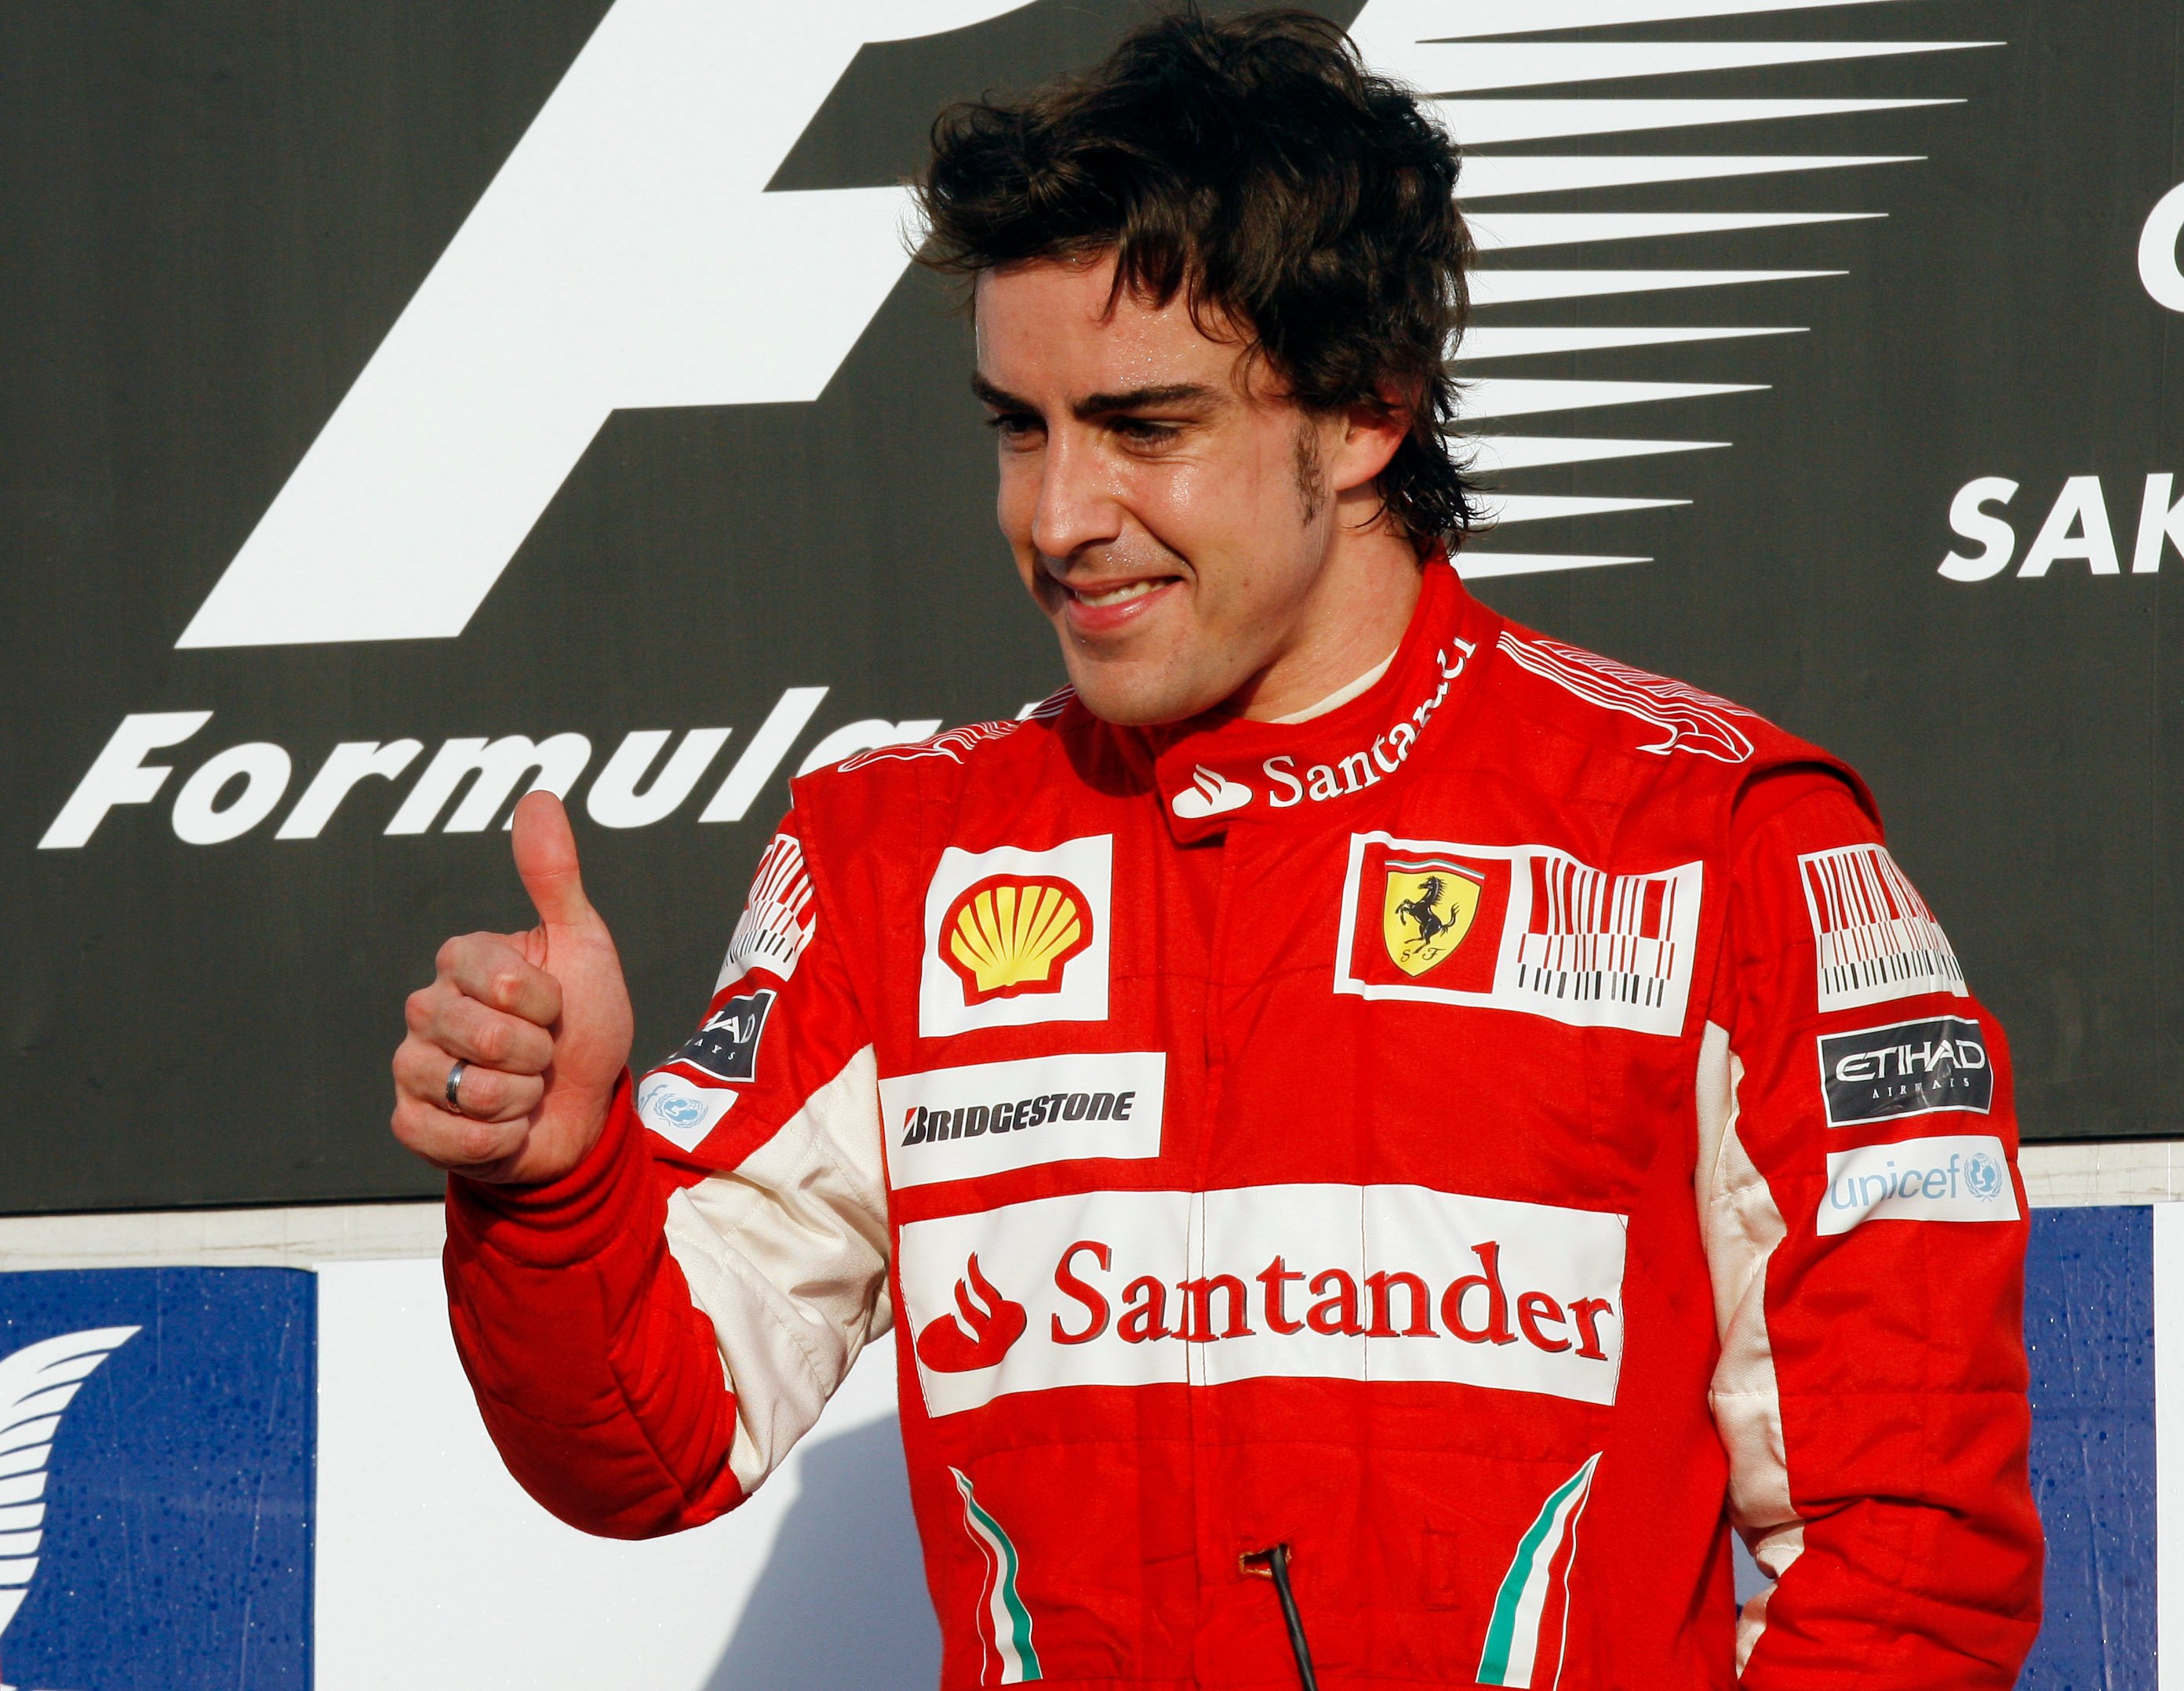 Formel 1, Ferrari, Fernando Alonso, Försäkring